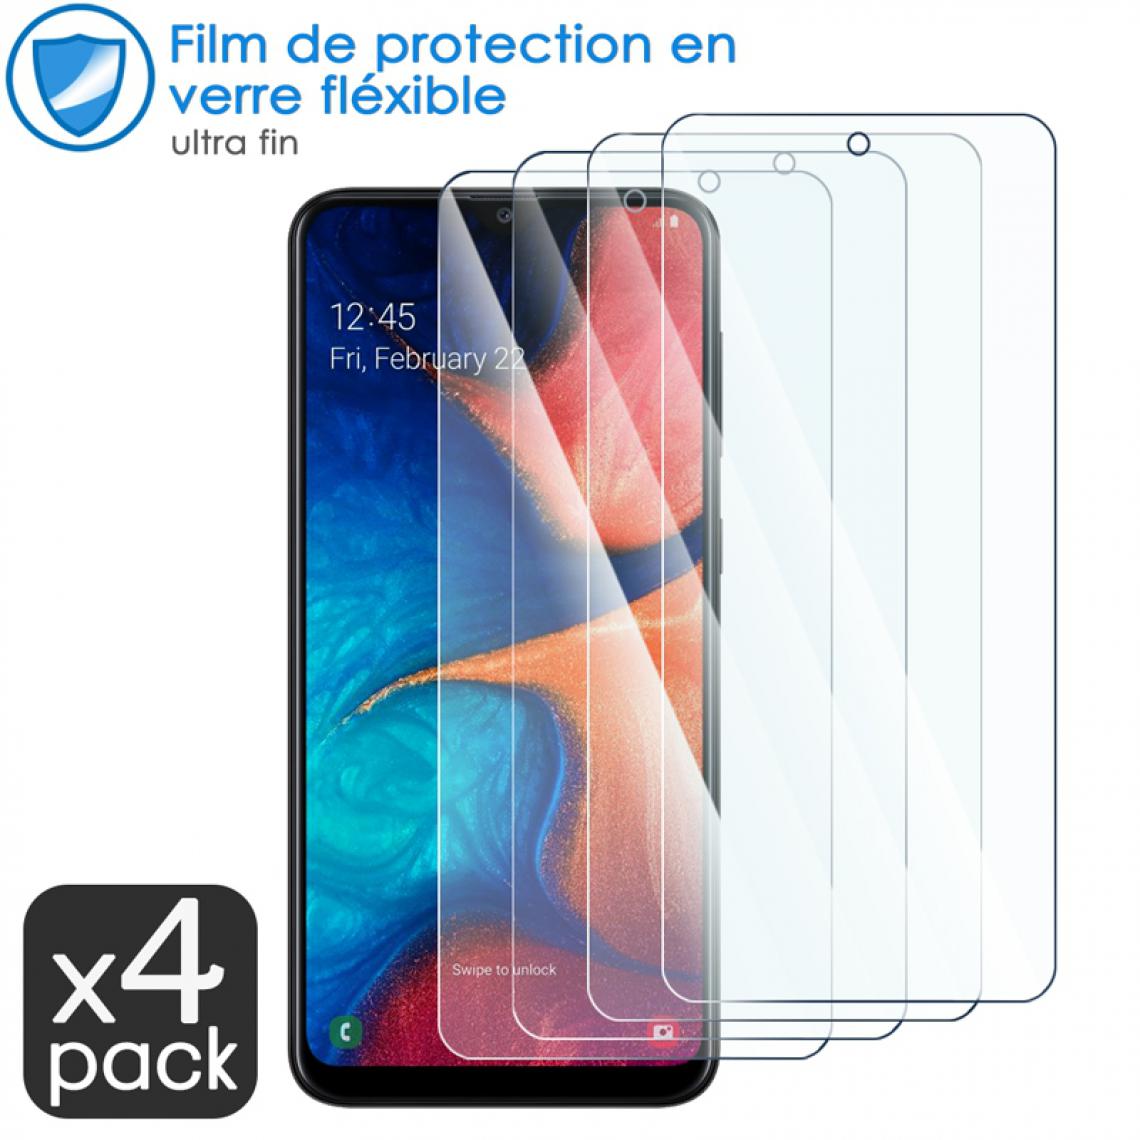 Karylax - Film de Protection d'écran en Verre Fléxible Dureté 9H pour XGODY A90 (Pack x4) - Protection écran smartphone